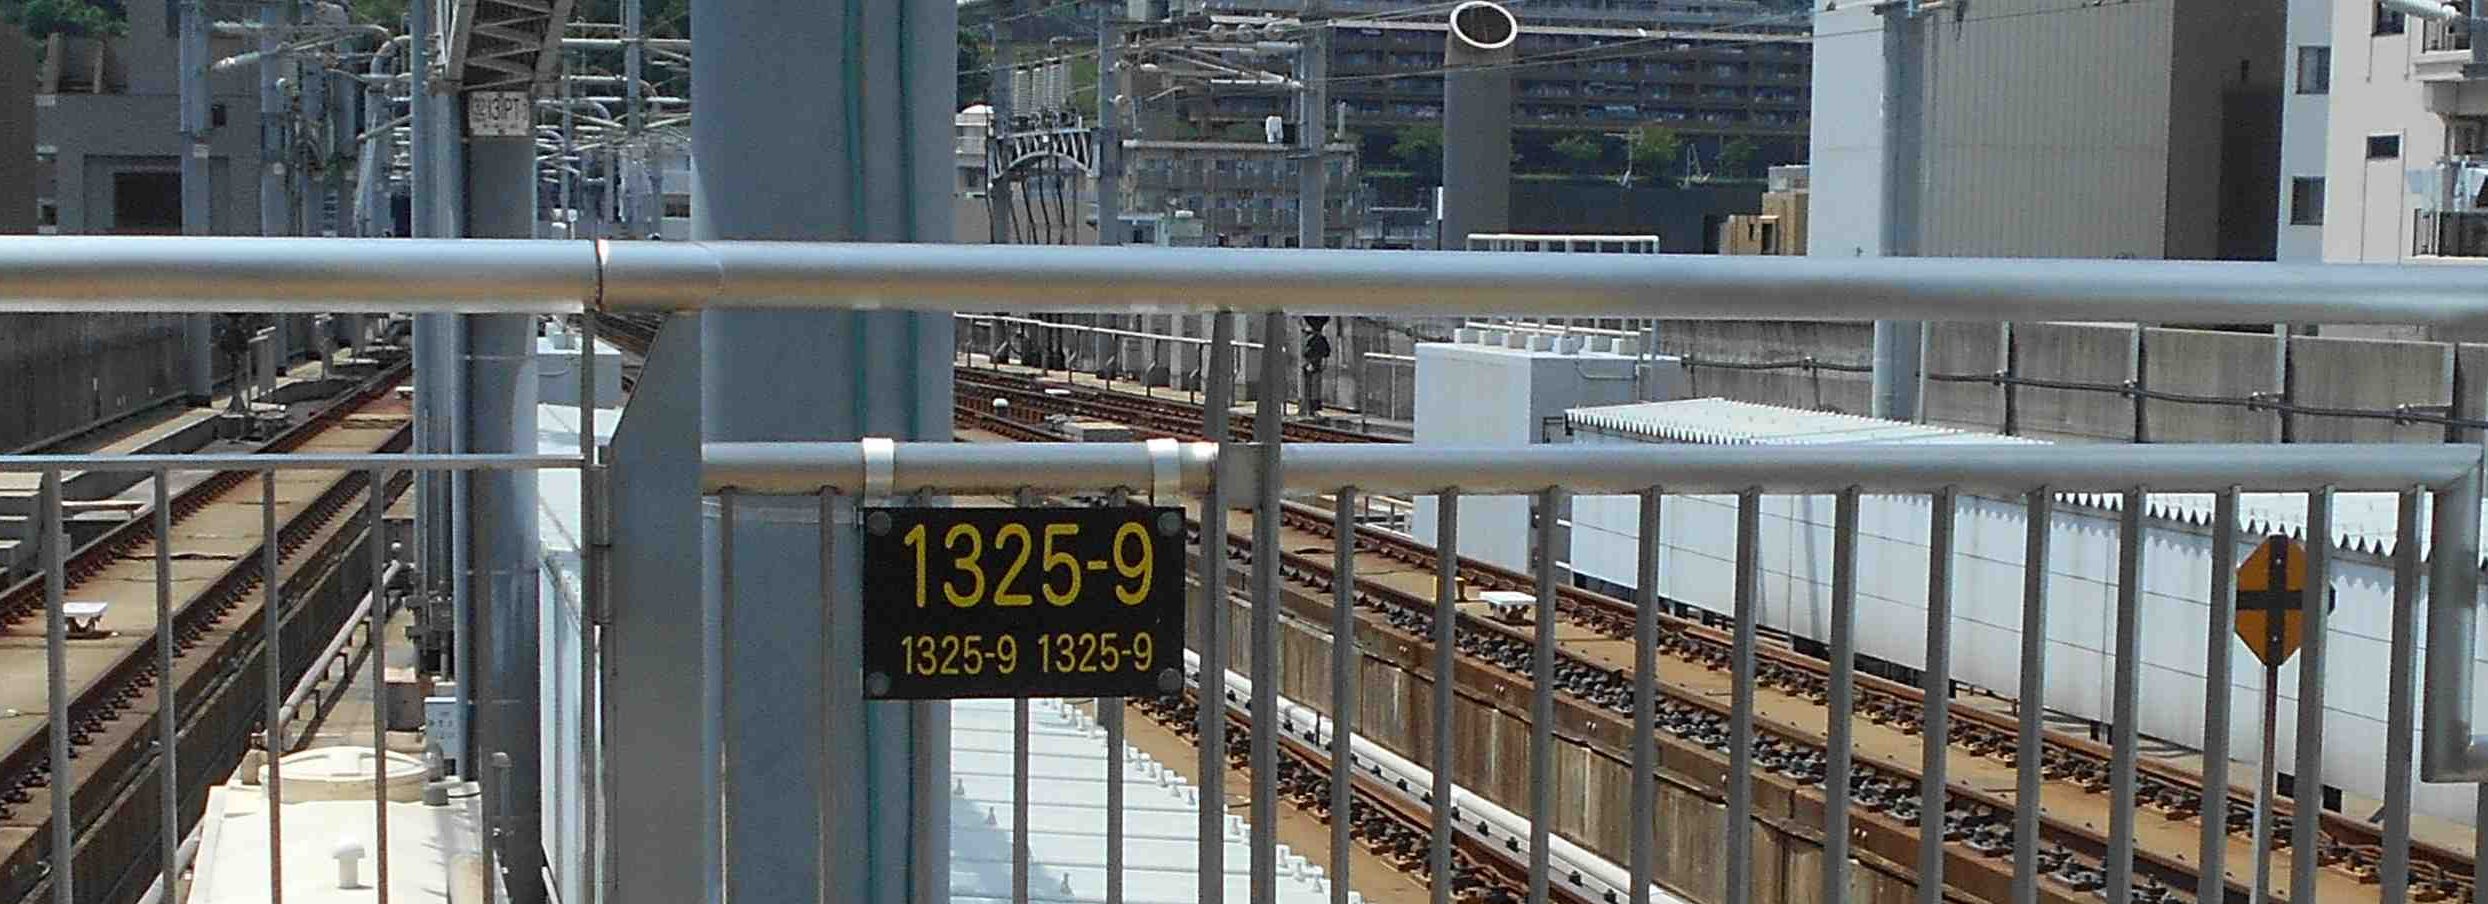 最南端の新幹線駅のキロポストここから始まりです。